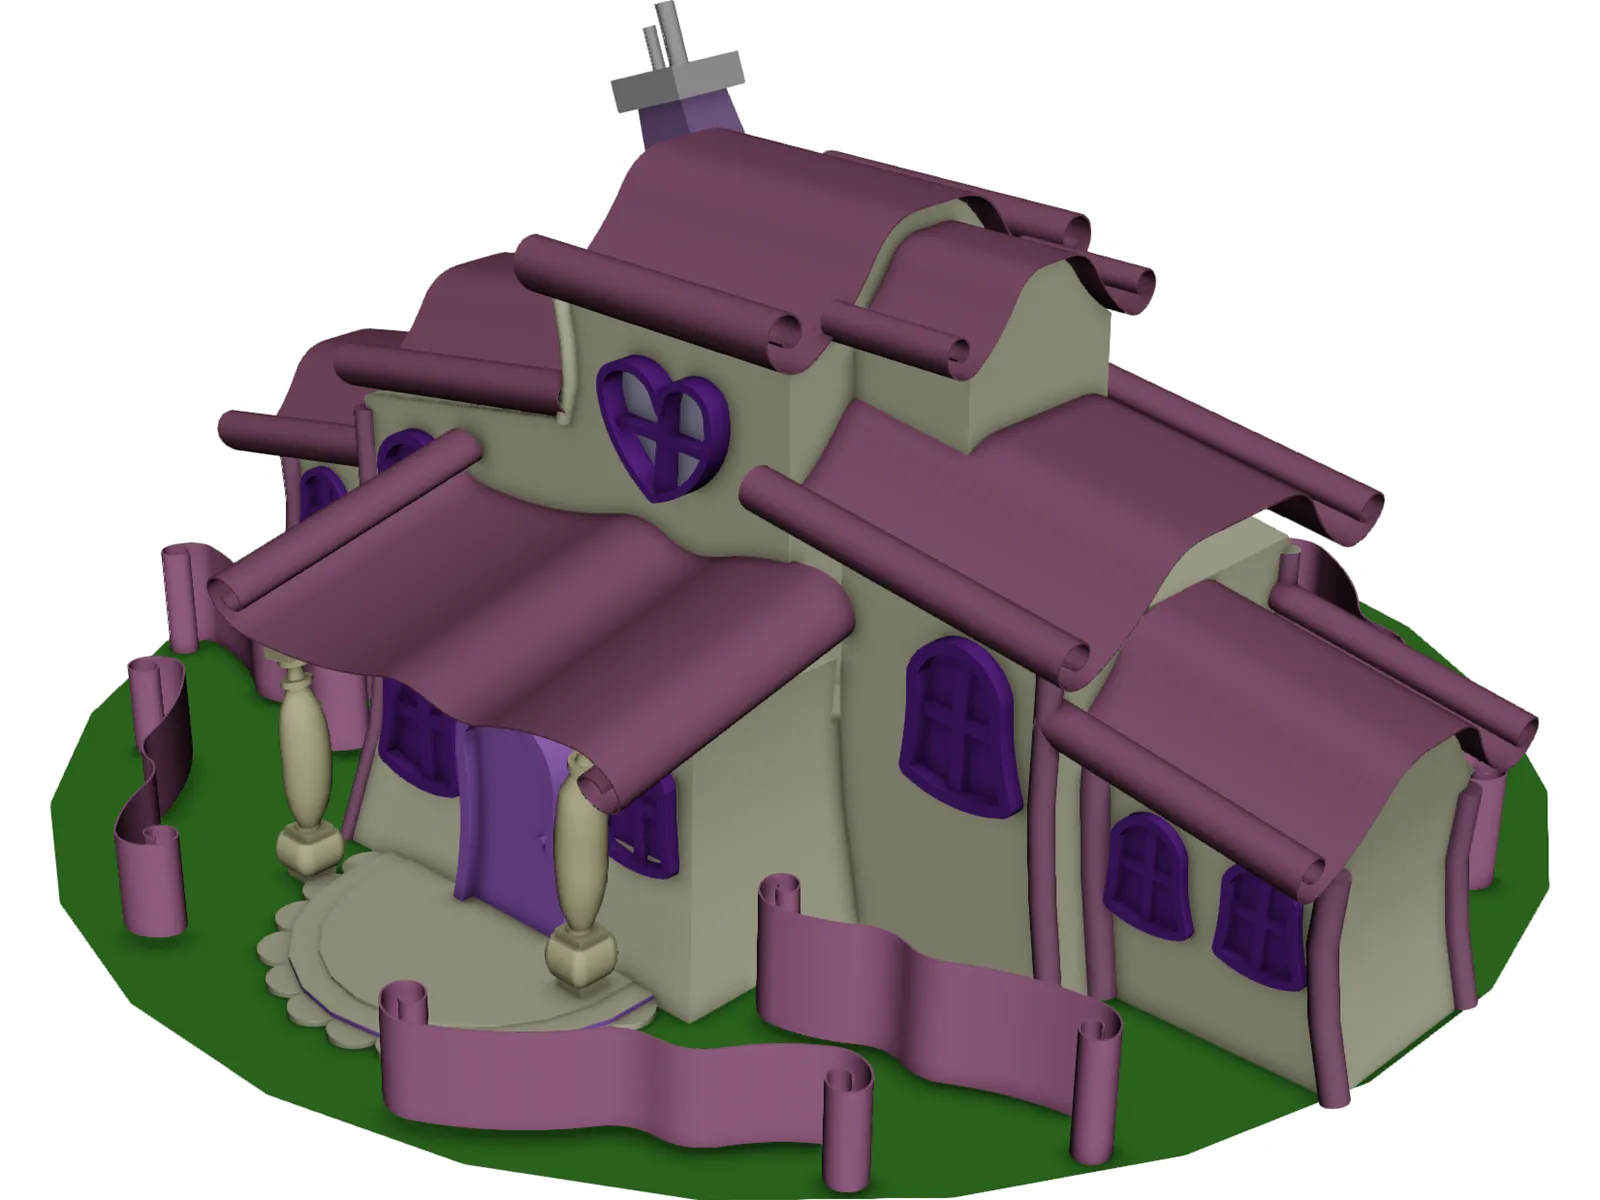 Minnie Mouse Cartoon House 3D Model